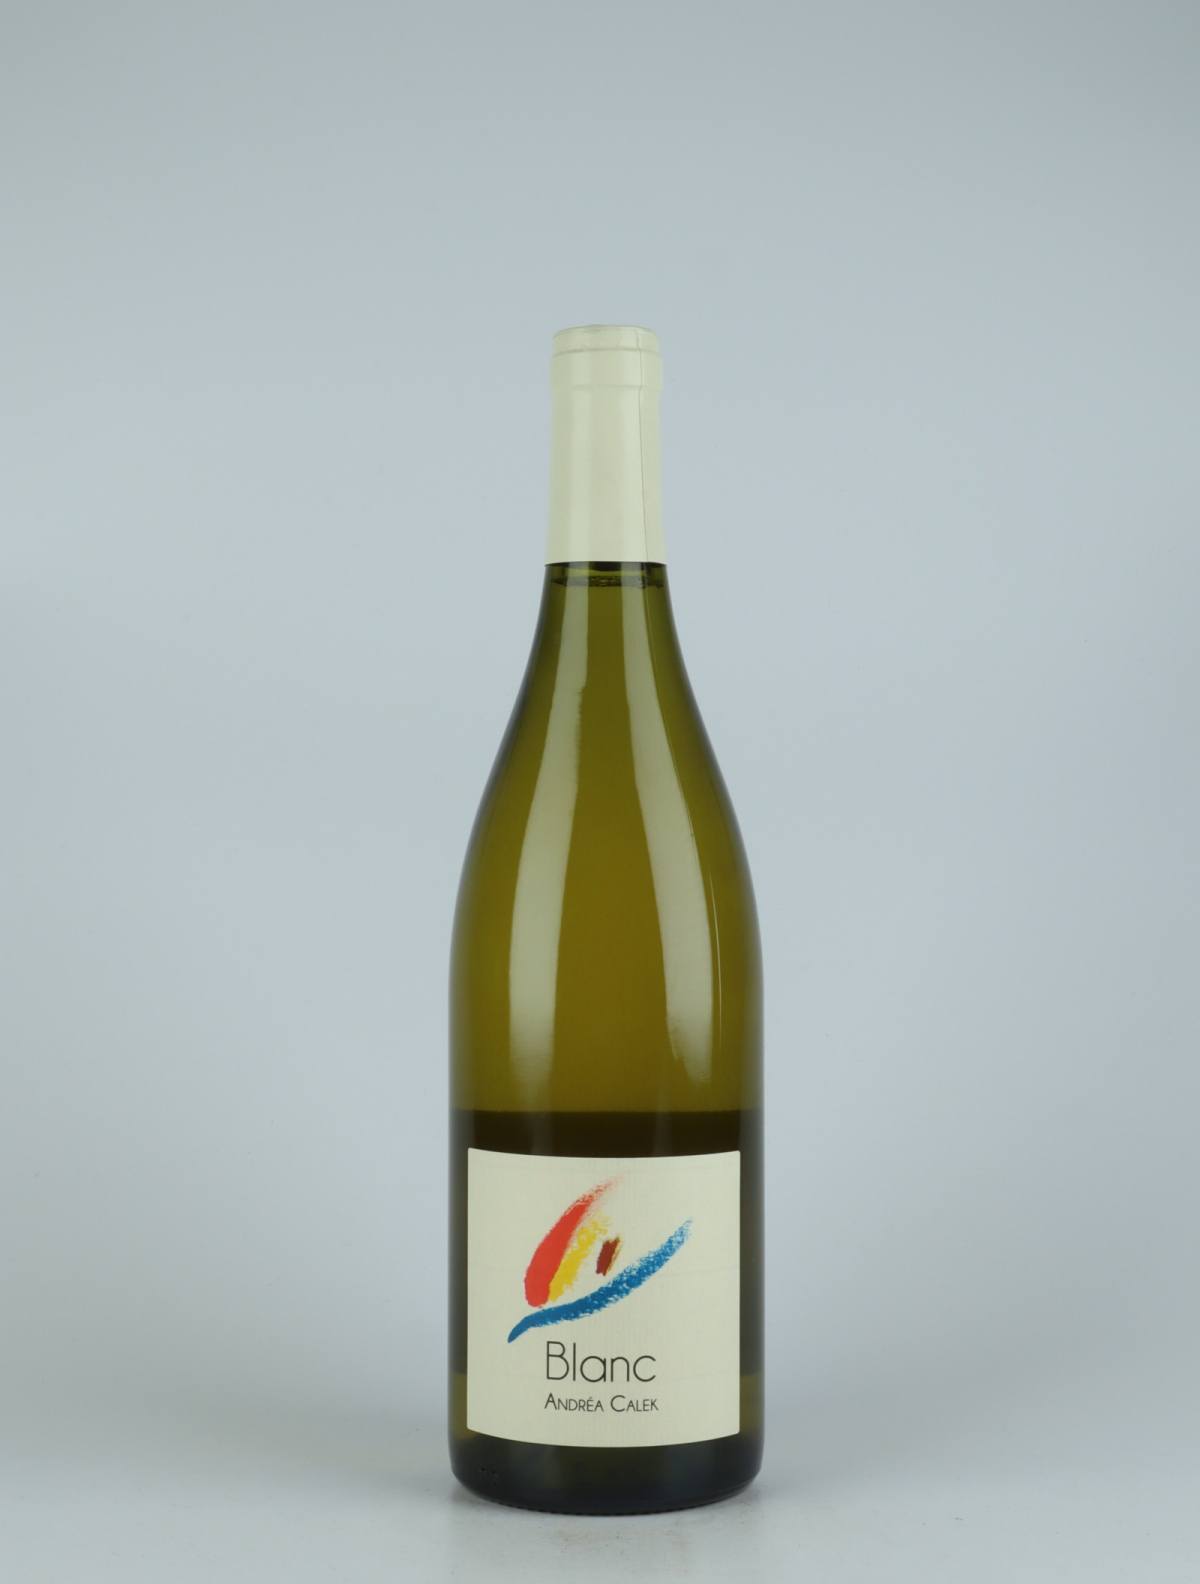 En flaske 2015 Blanc Hvidvin fra Andrea Calek, Ardèche i Frankrig